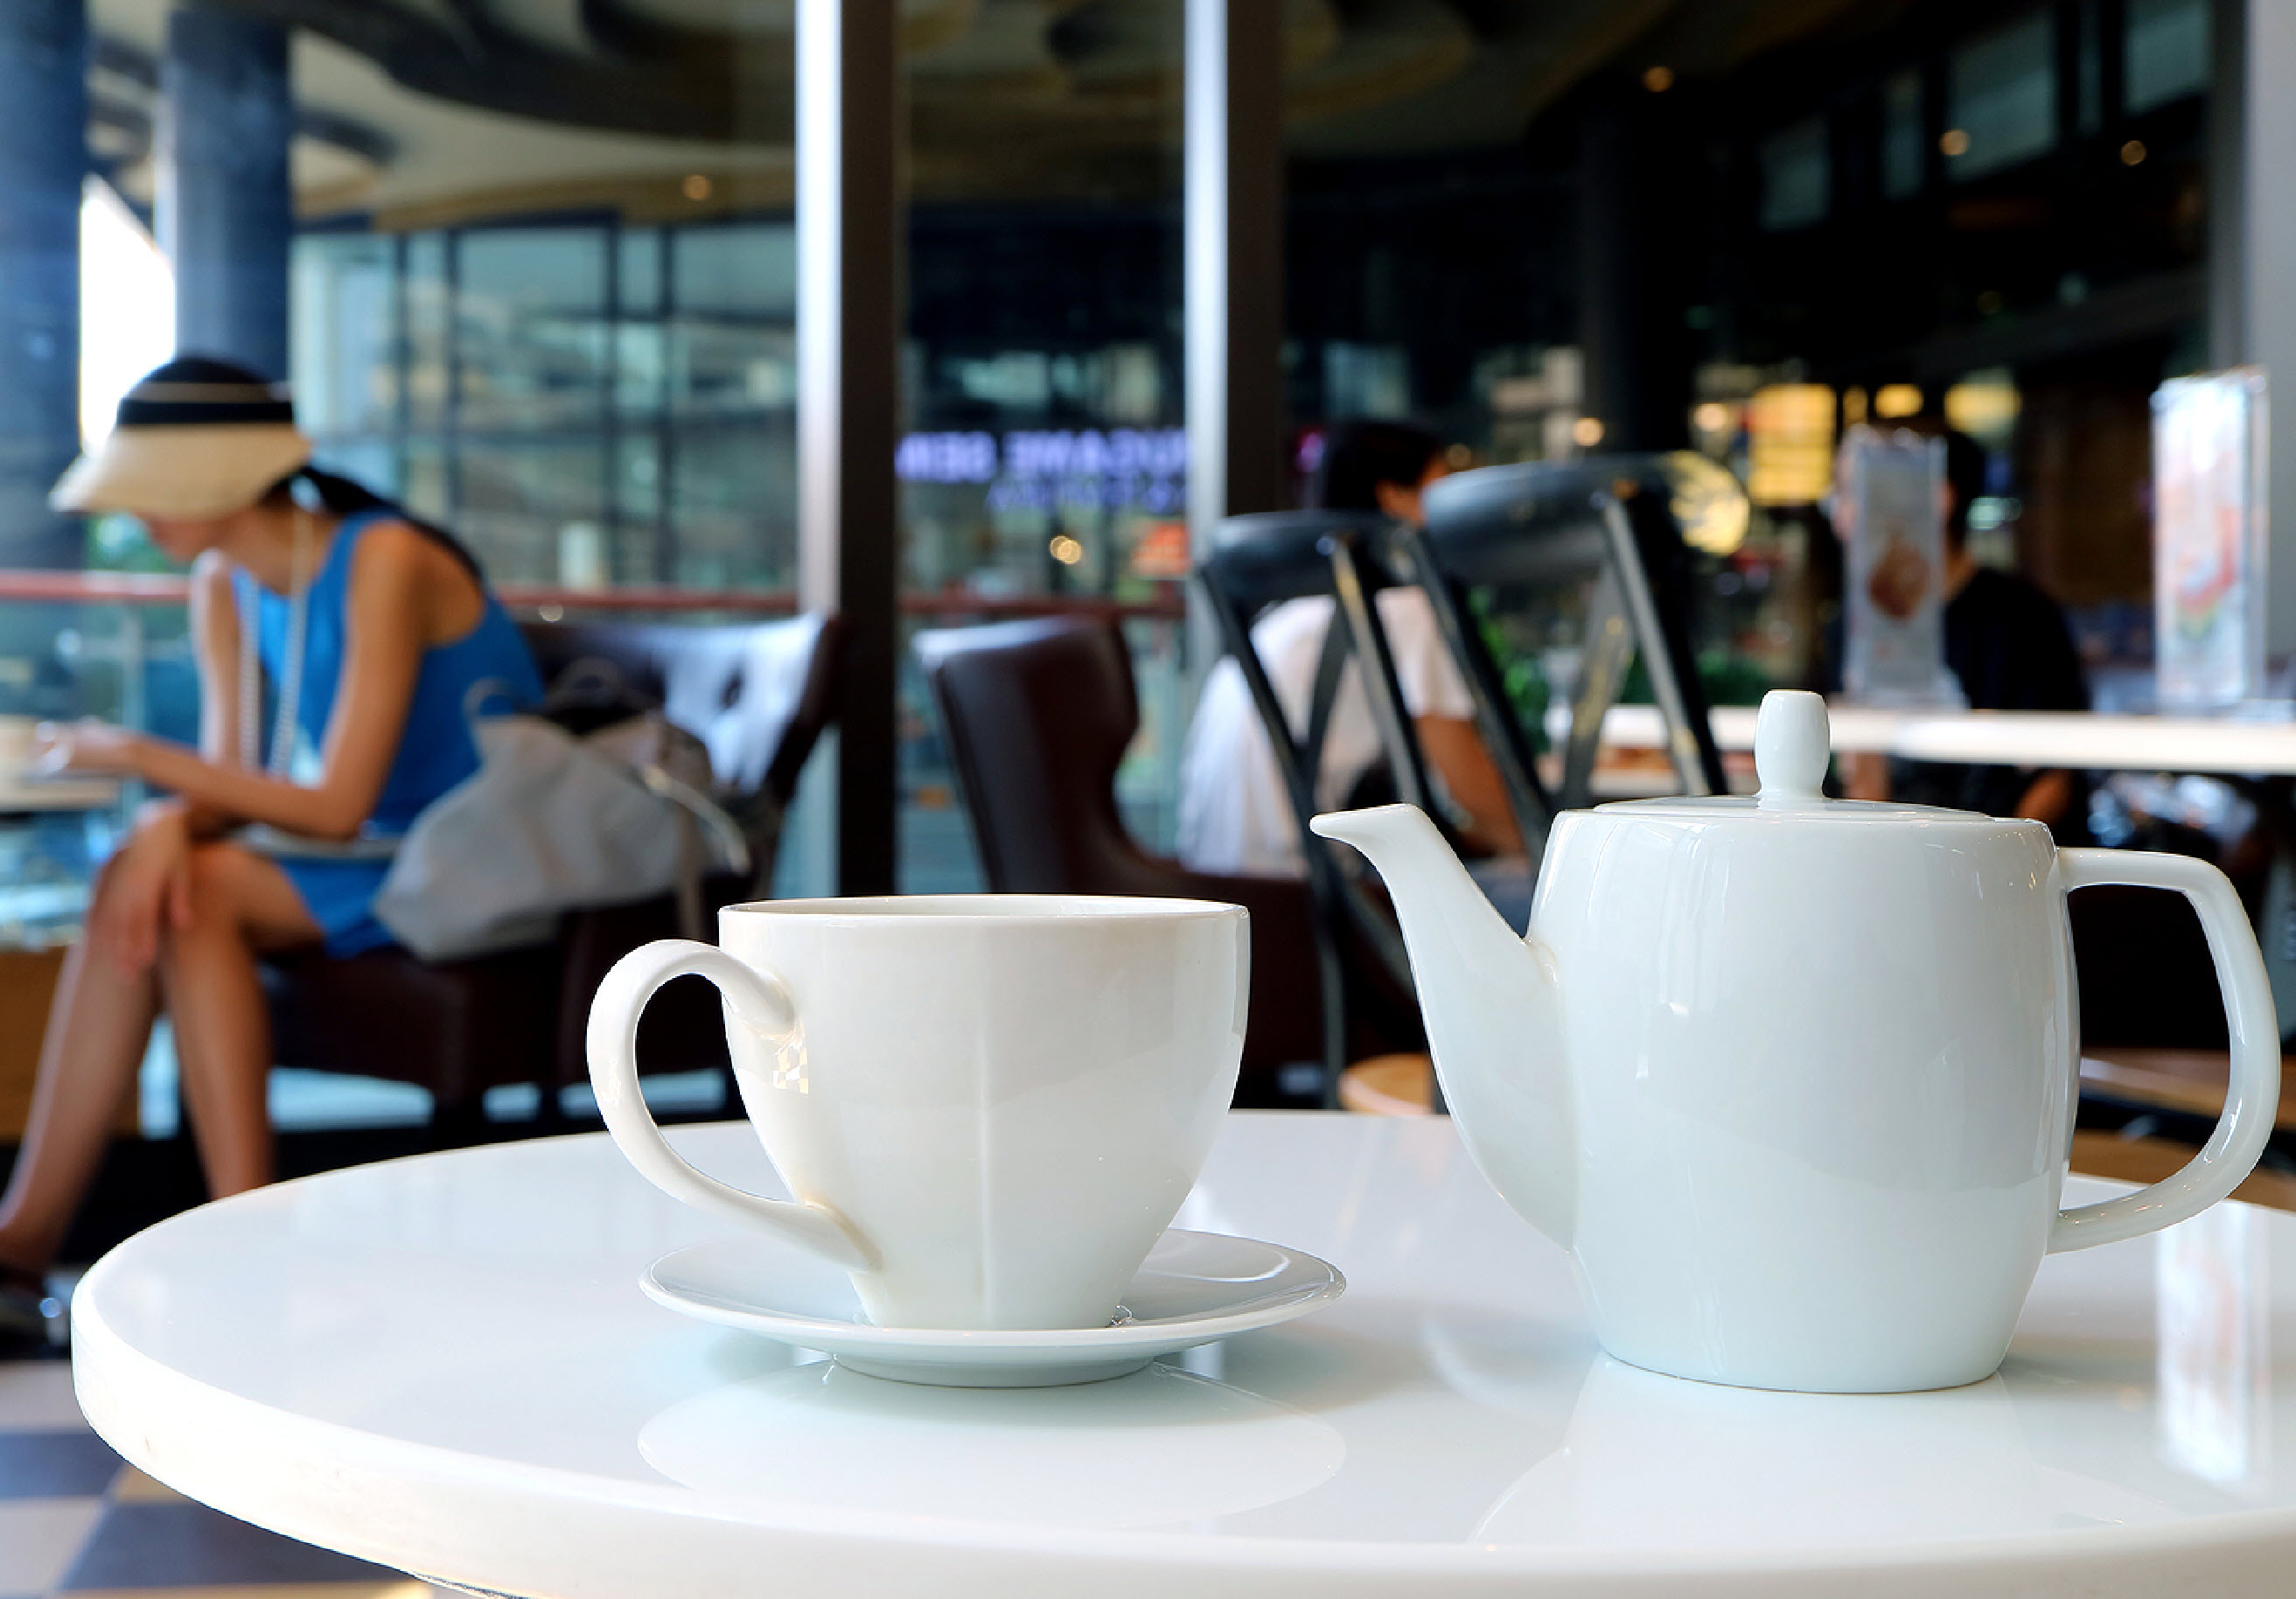 Tea Shops Cafes Teahouses Tip for Digital Signage Menus